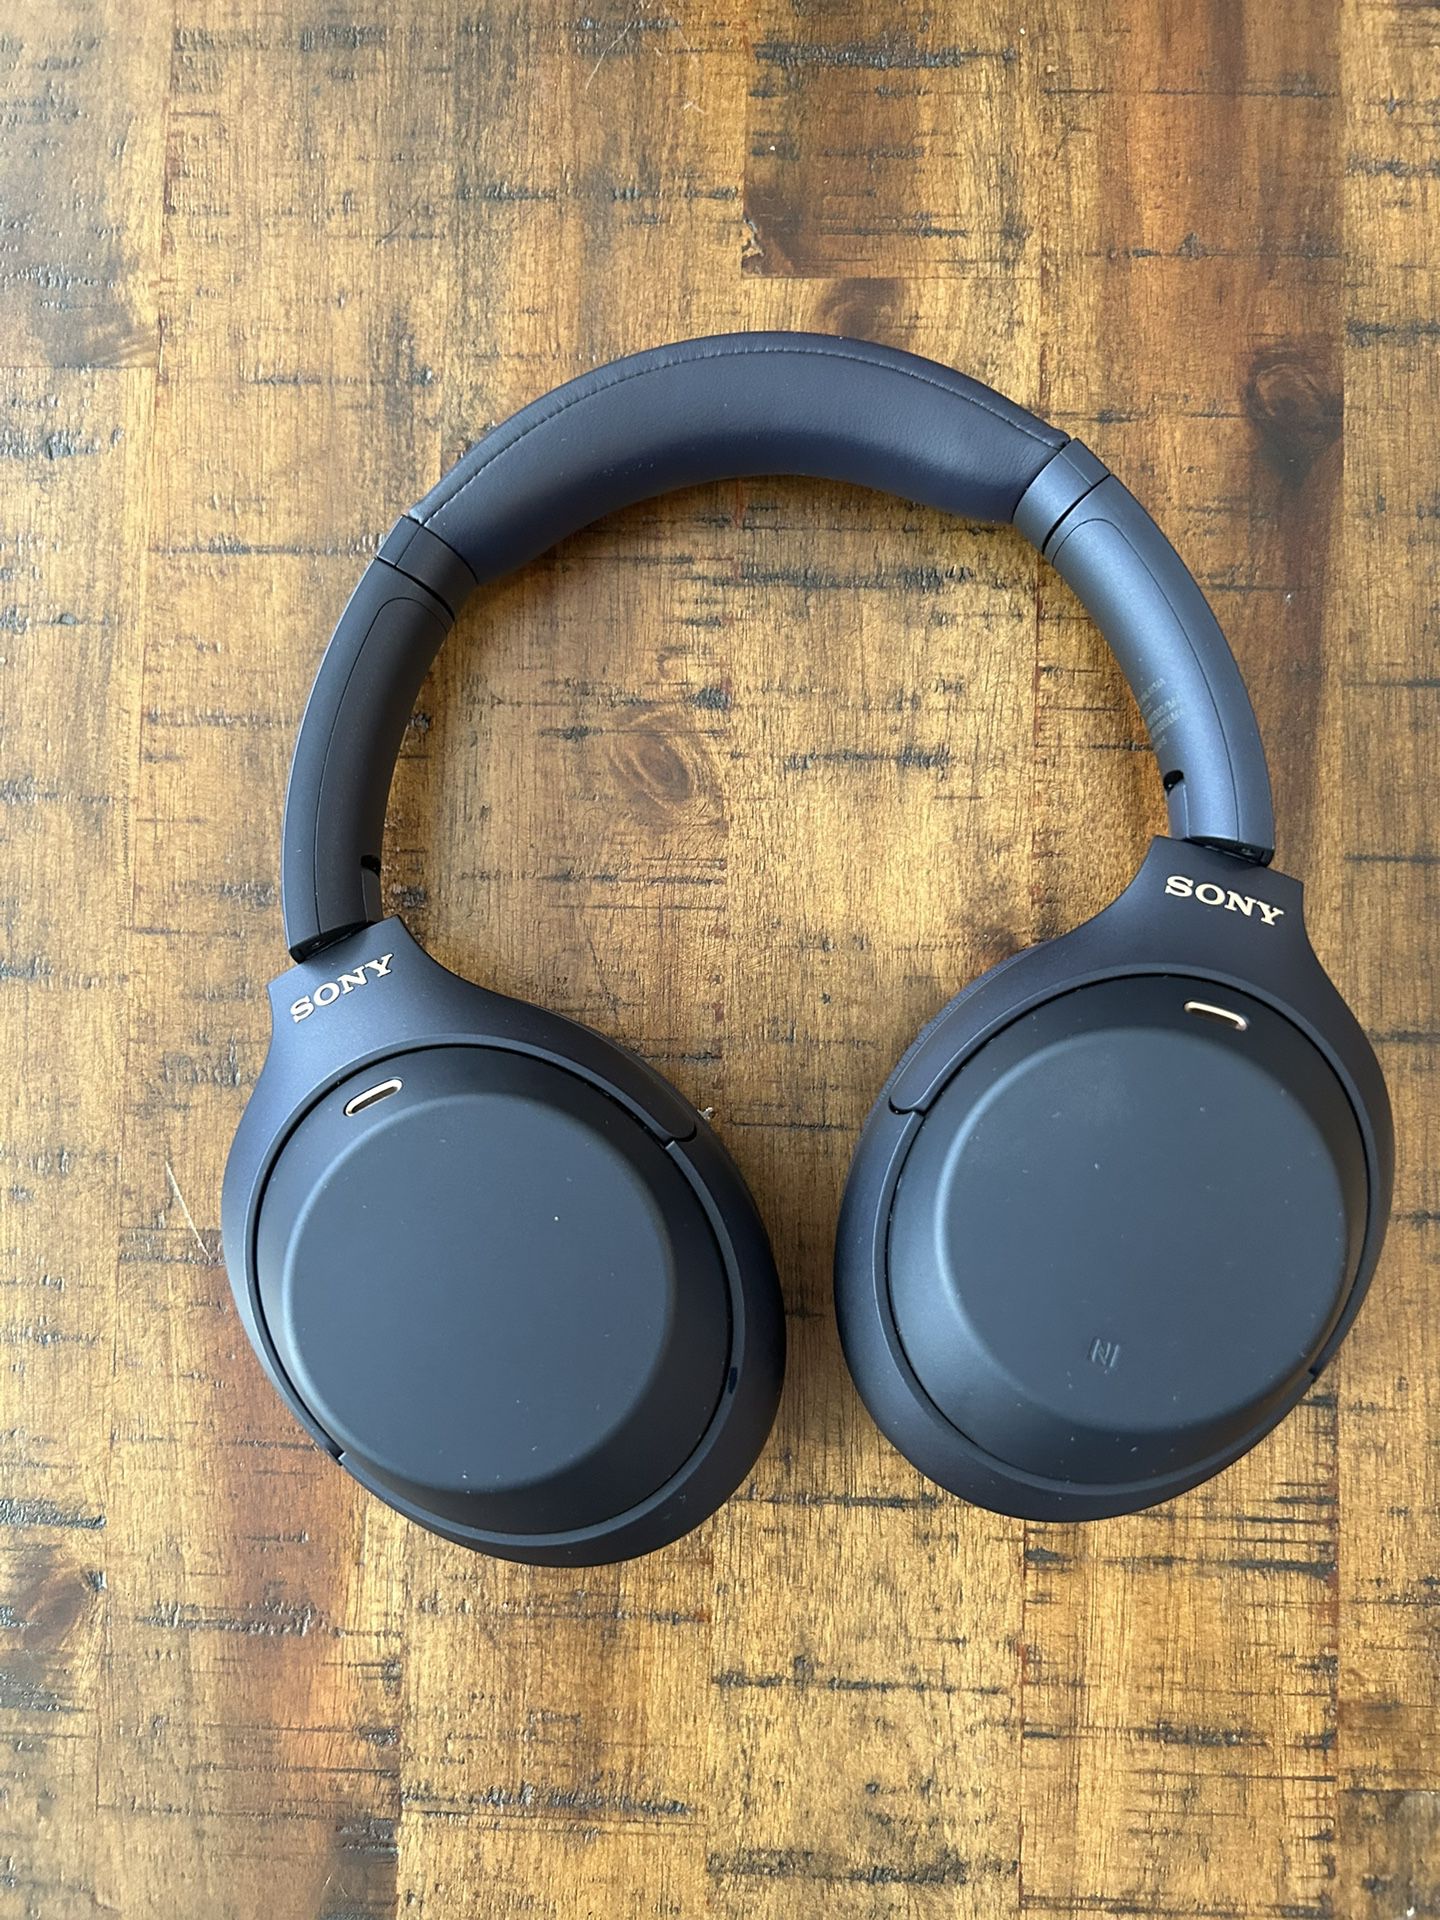 Sony wh1000xm4 headphones (Blue)